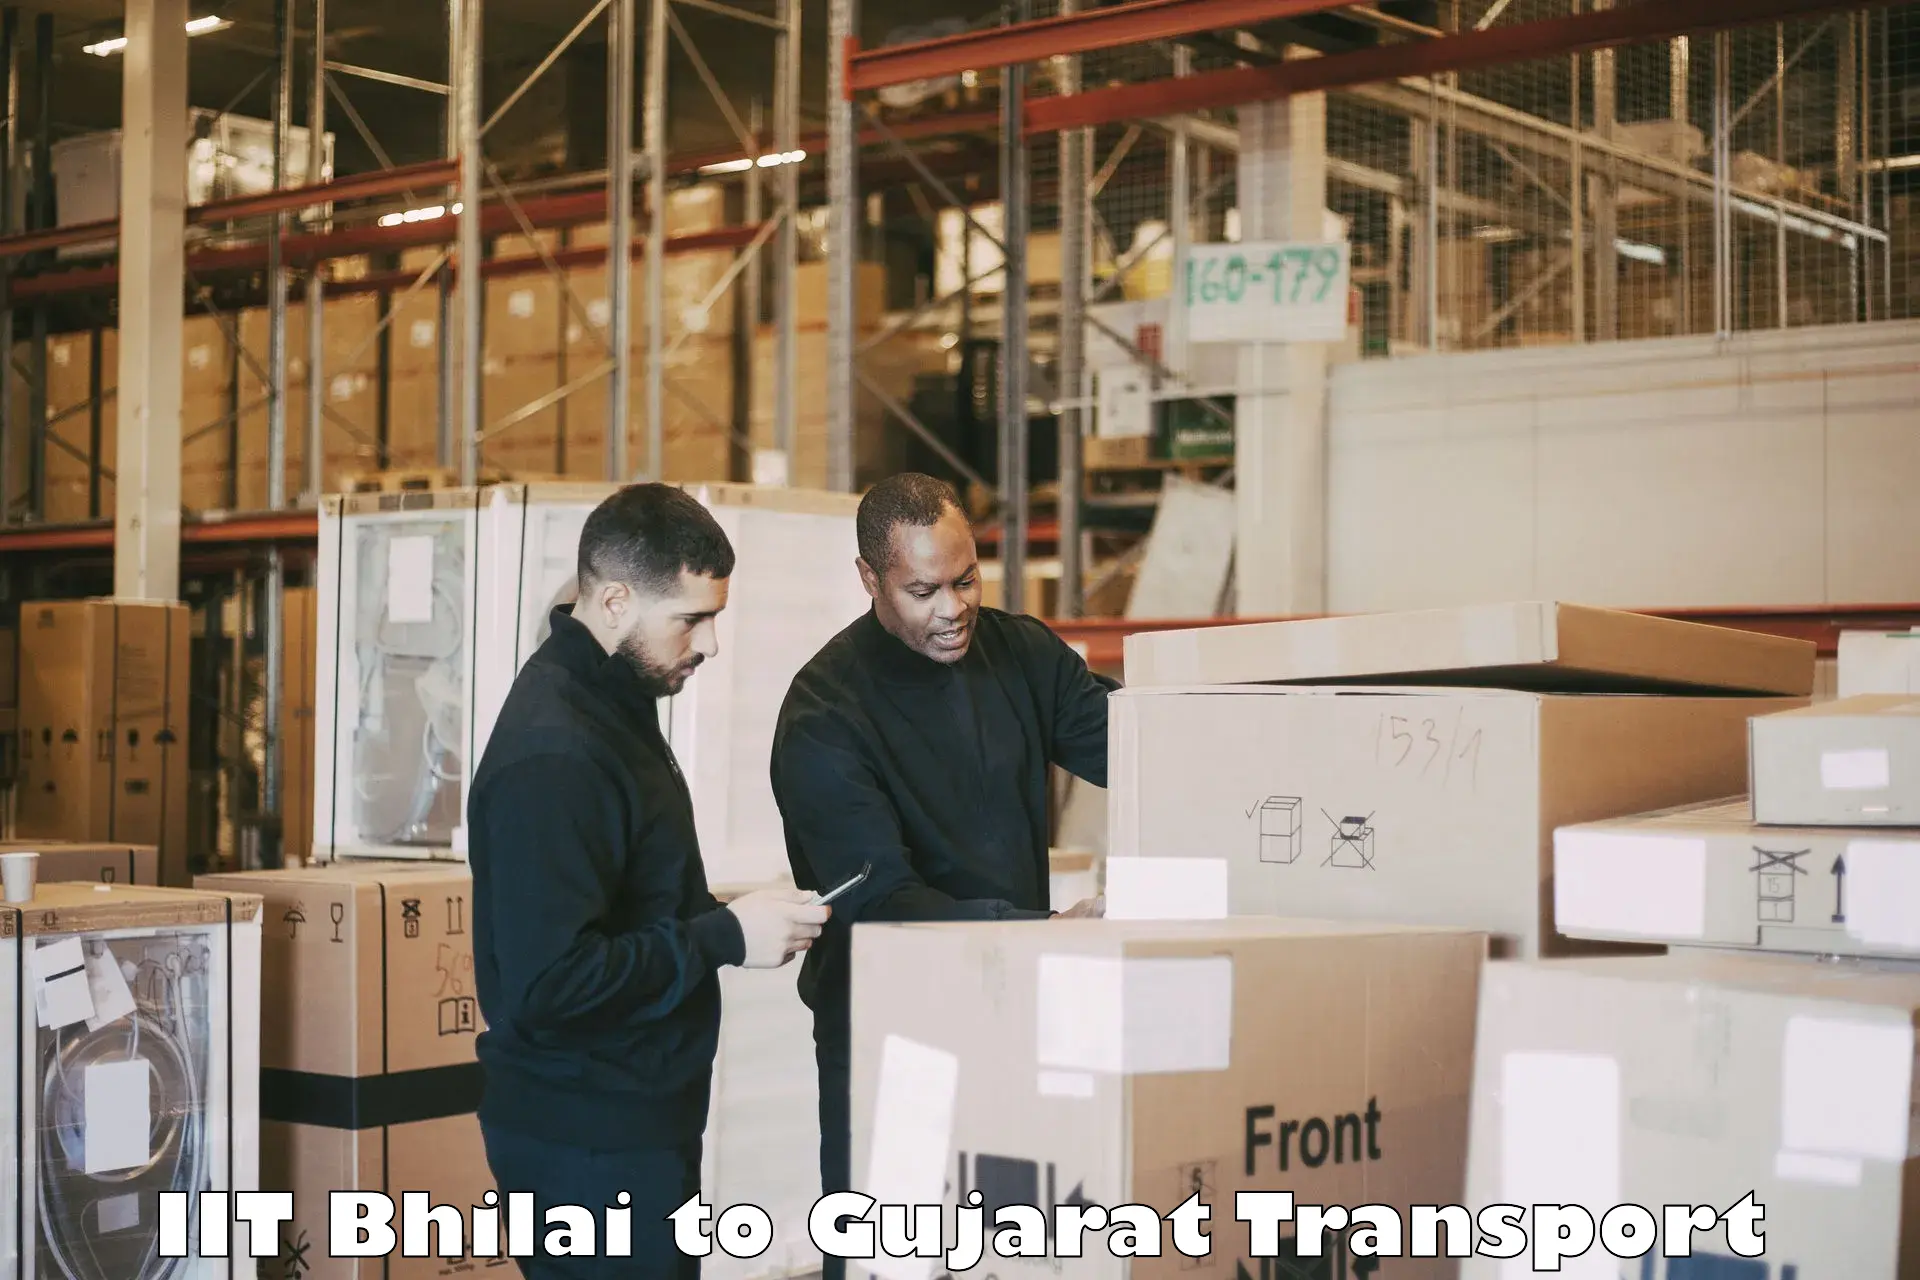 Daily transport service IIT Bhilai to Kalol Gujarat